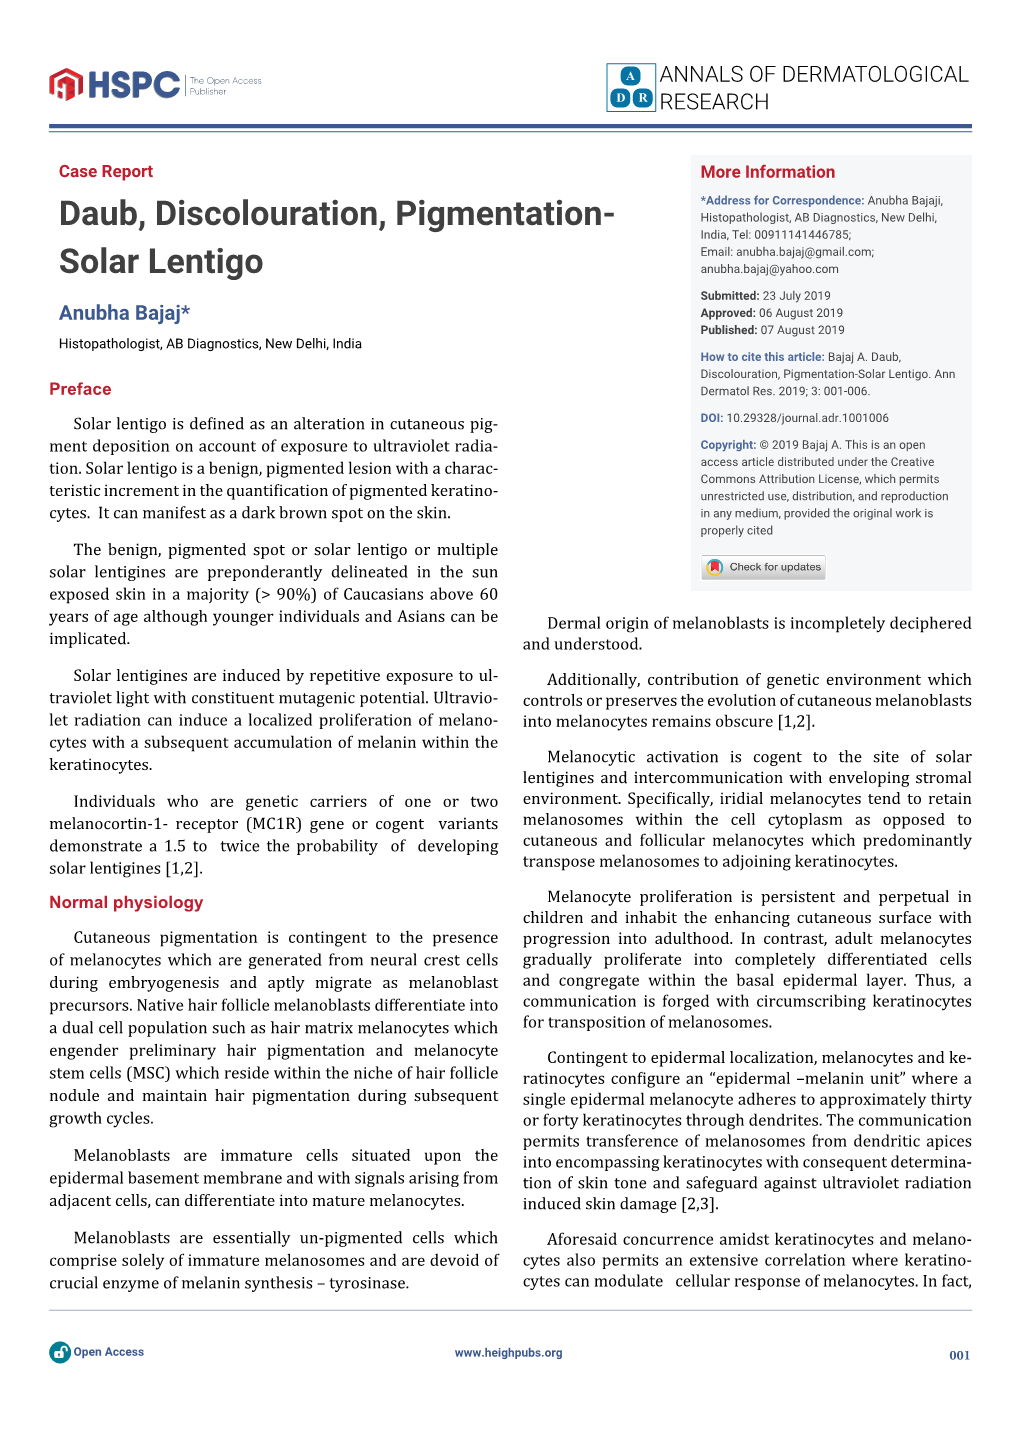 Daub, Discolouration, Pigmentation-Solar Lentigo